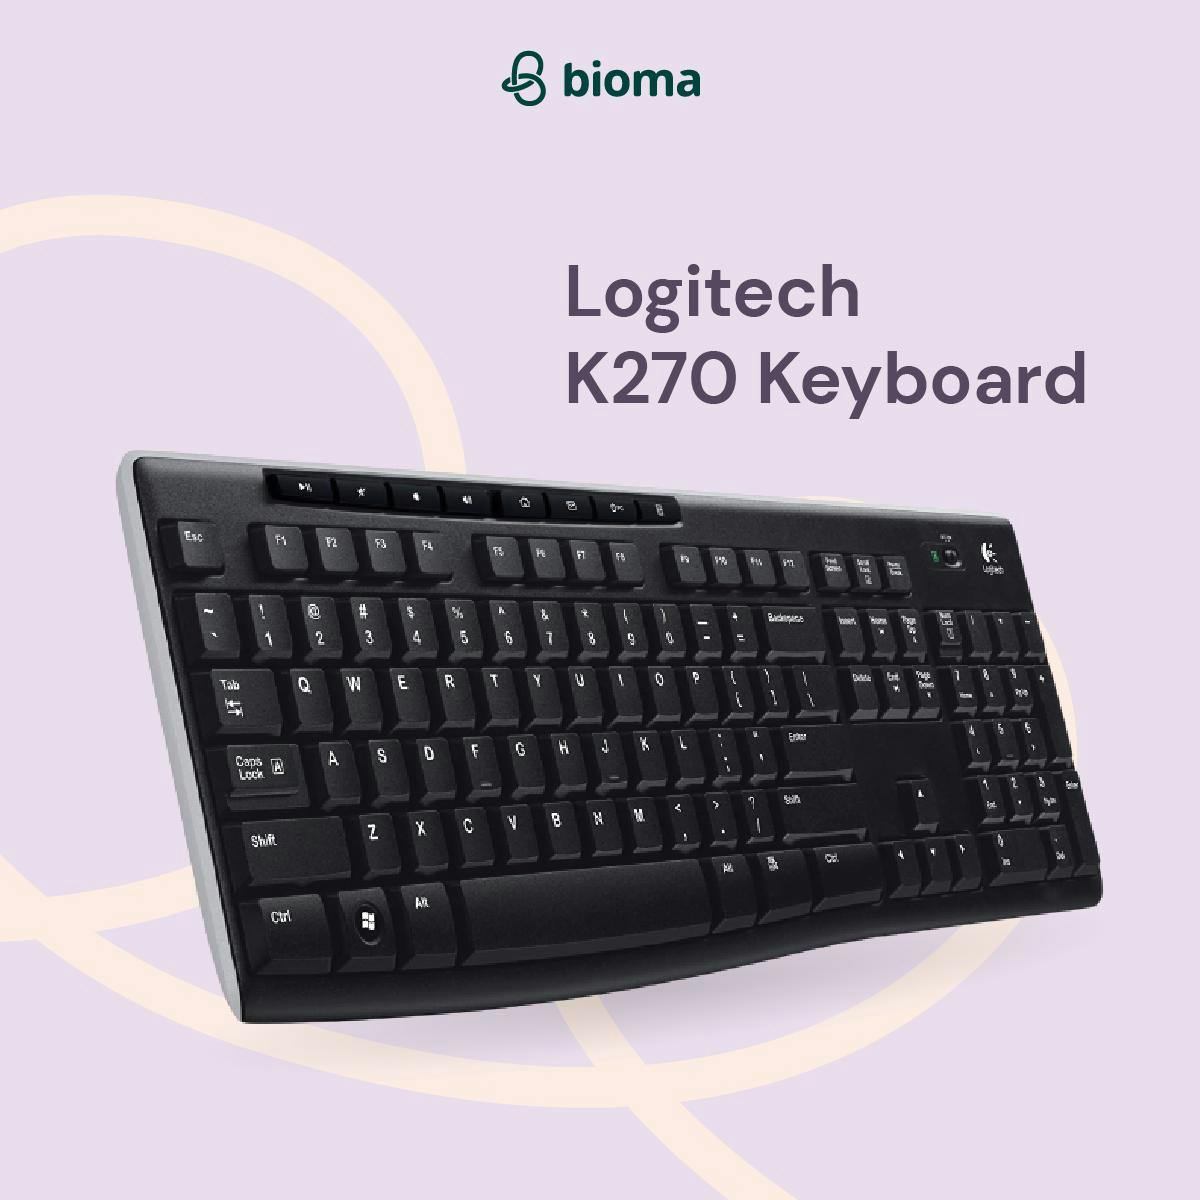 K270 Keyboard